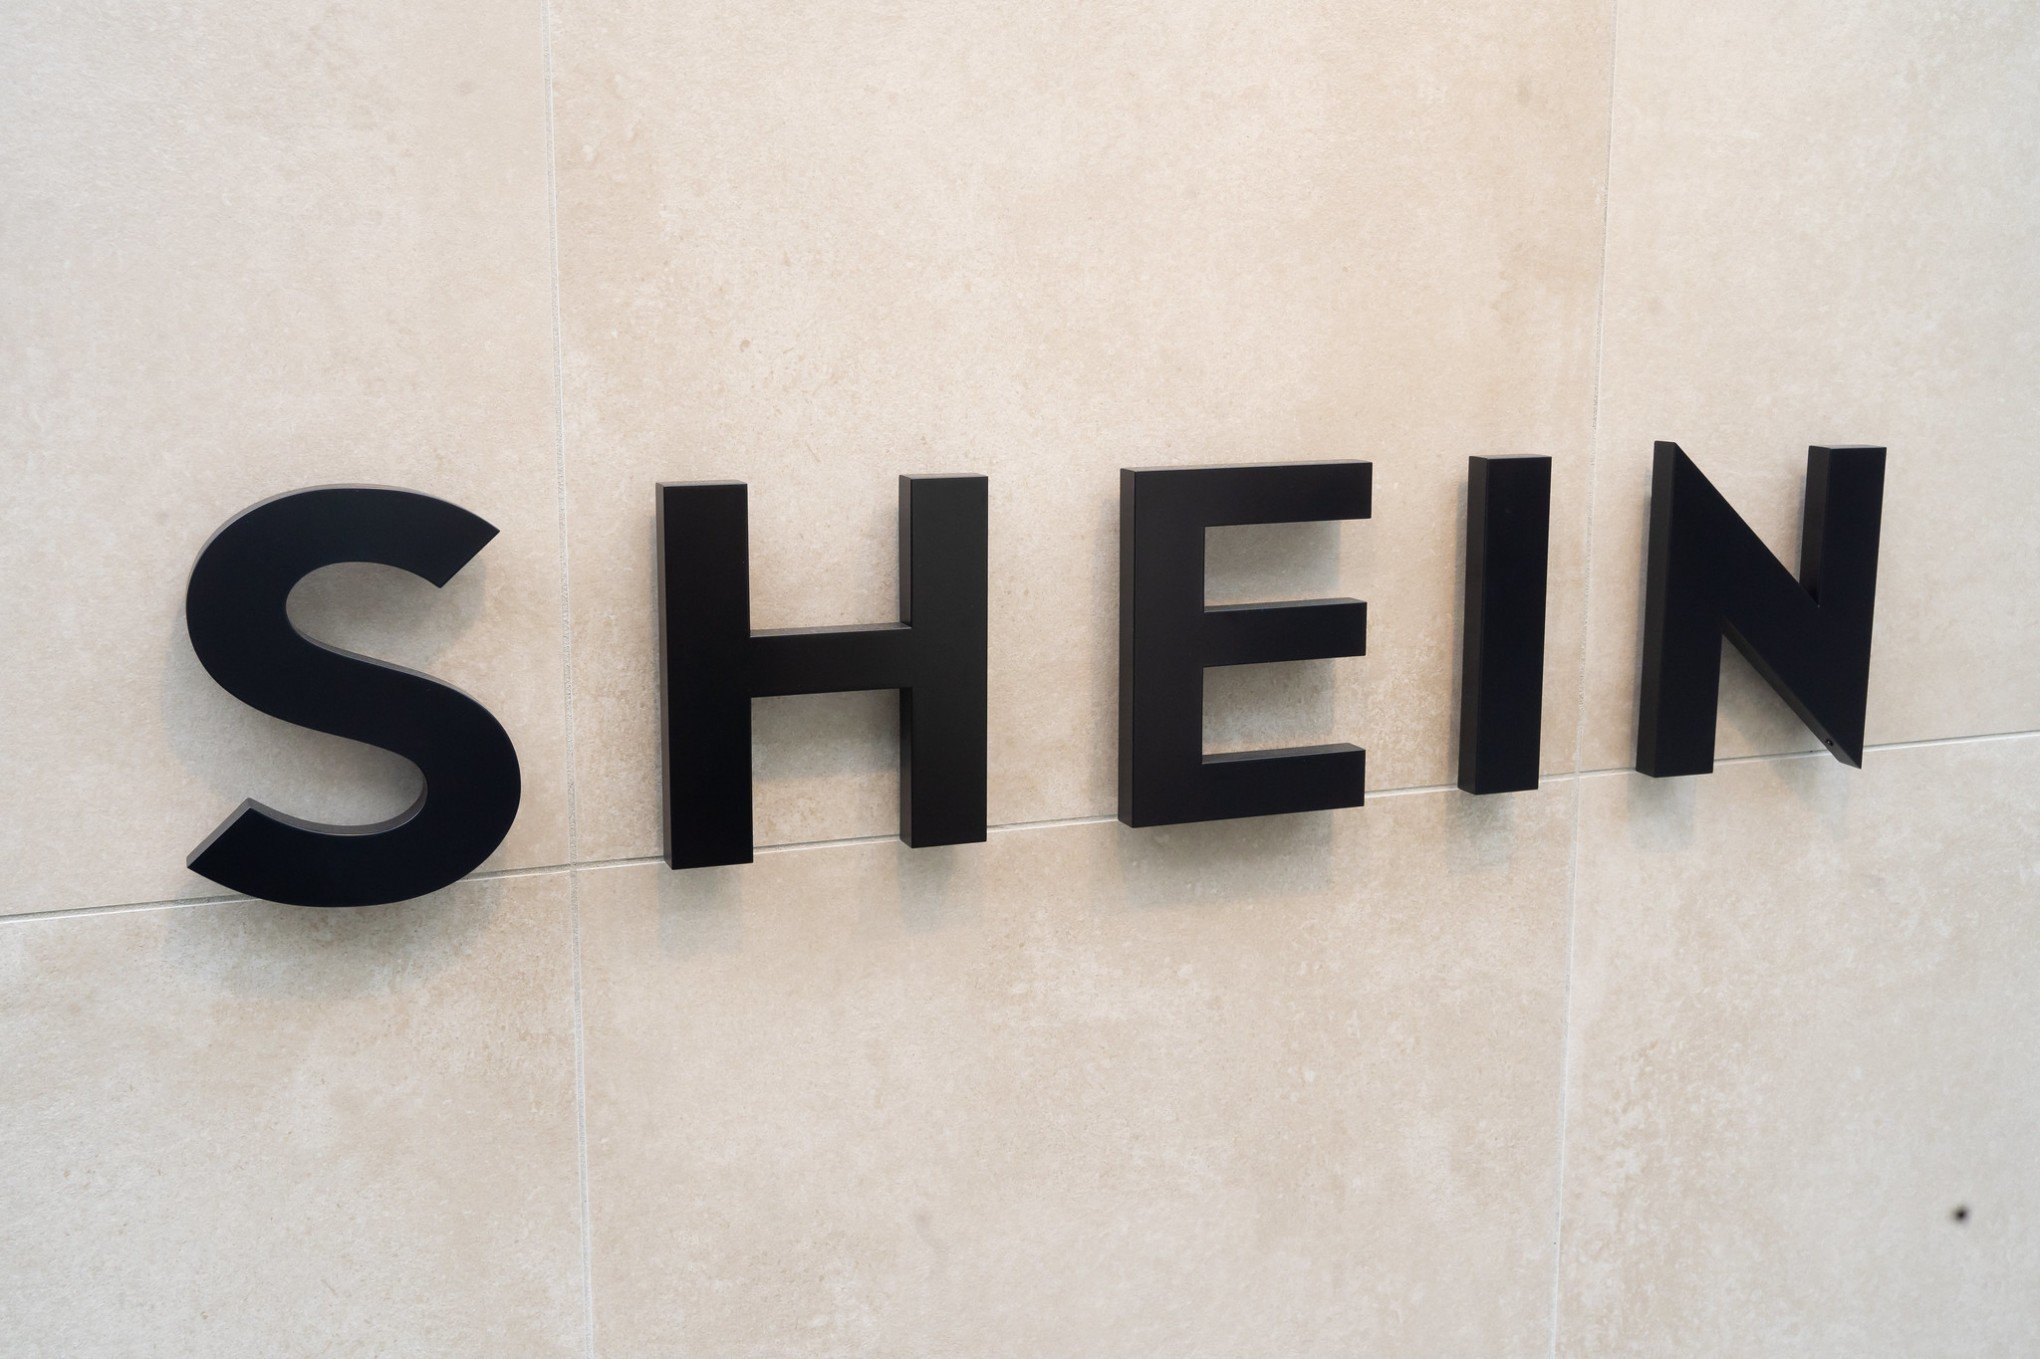 Receita coloca Shein em programa de isenção de imposto para compras até US$  50